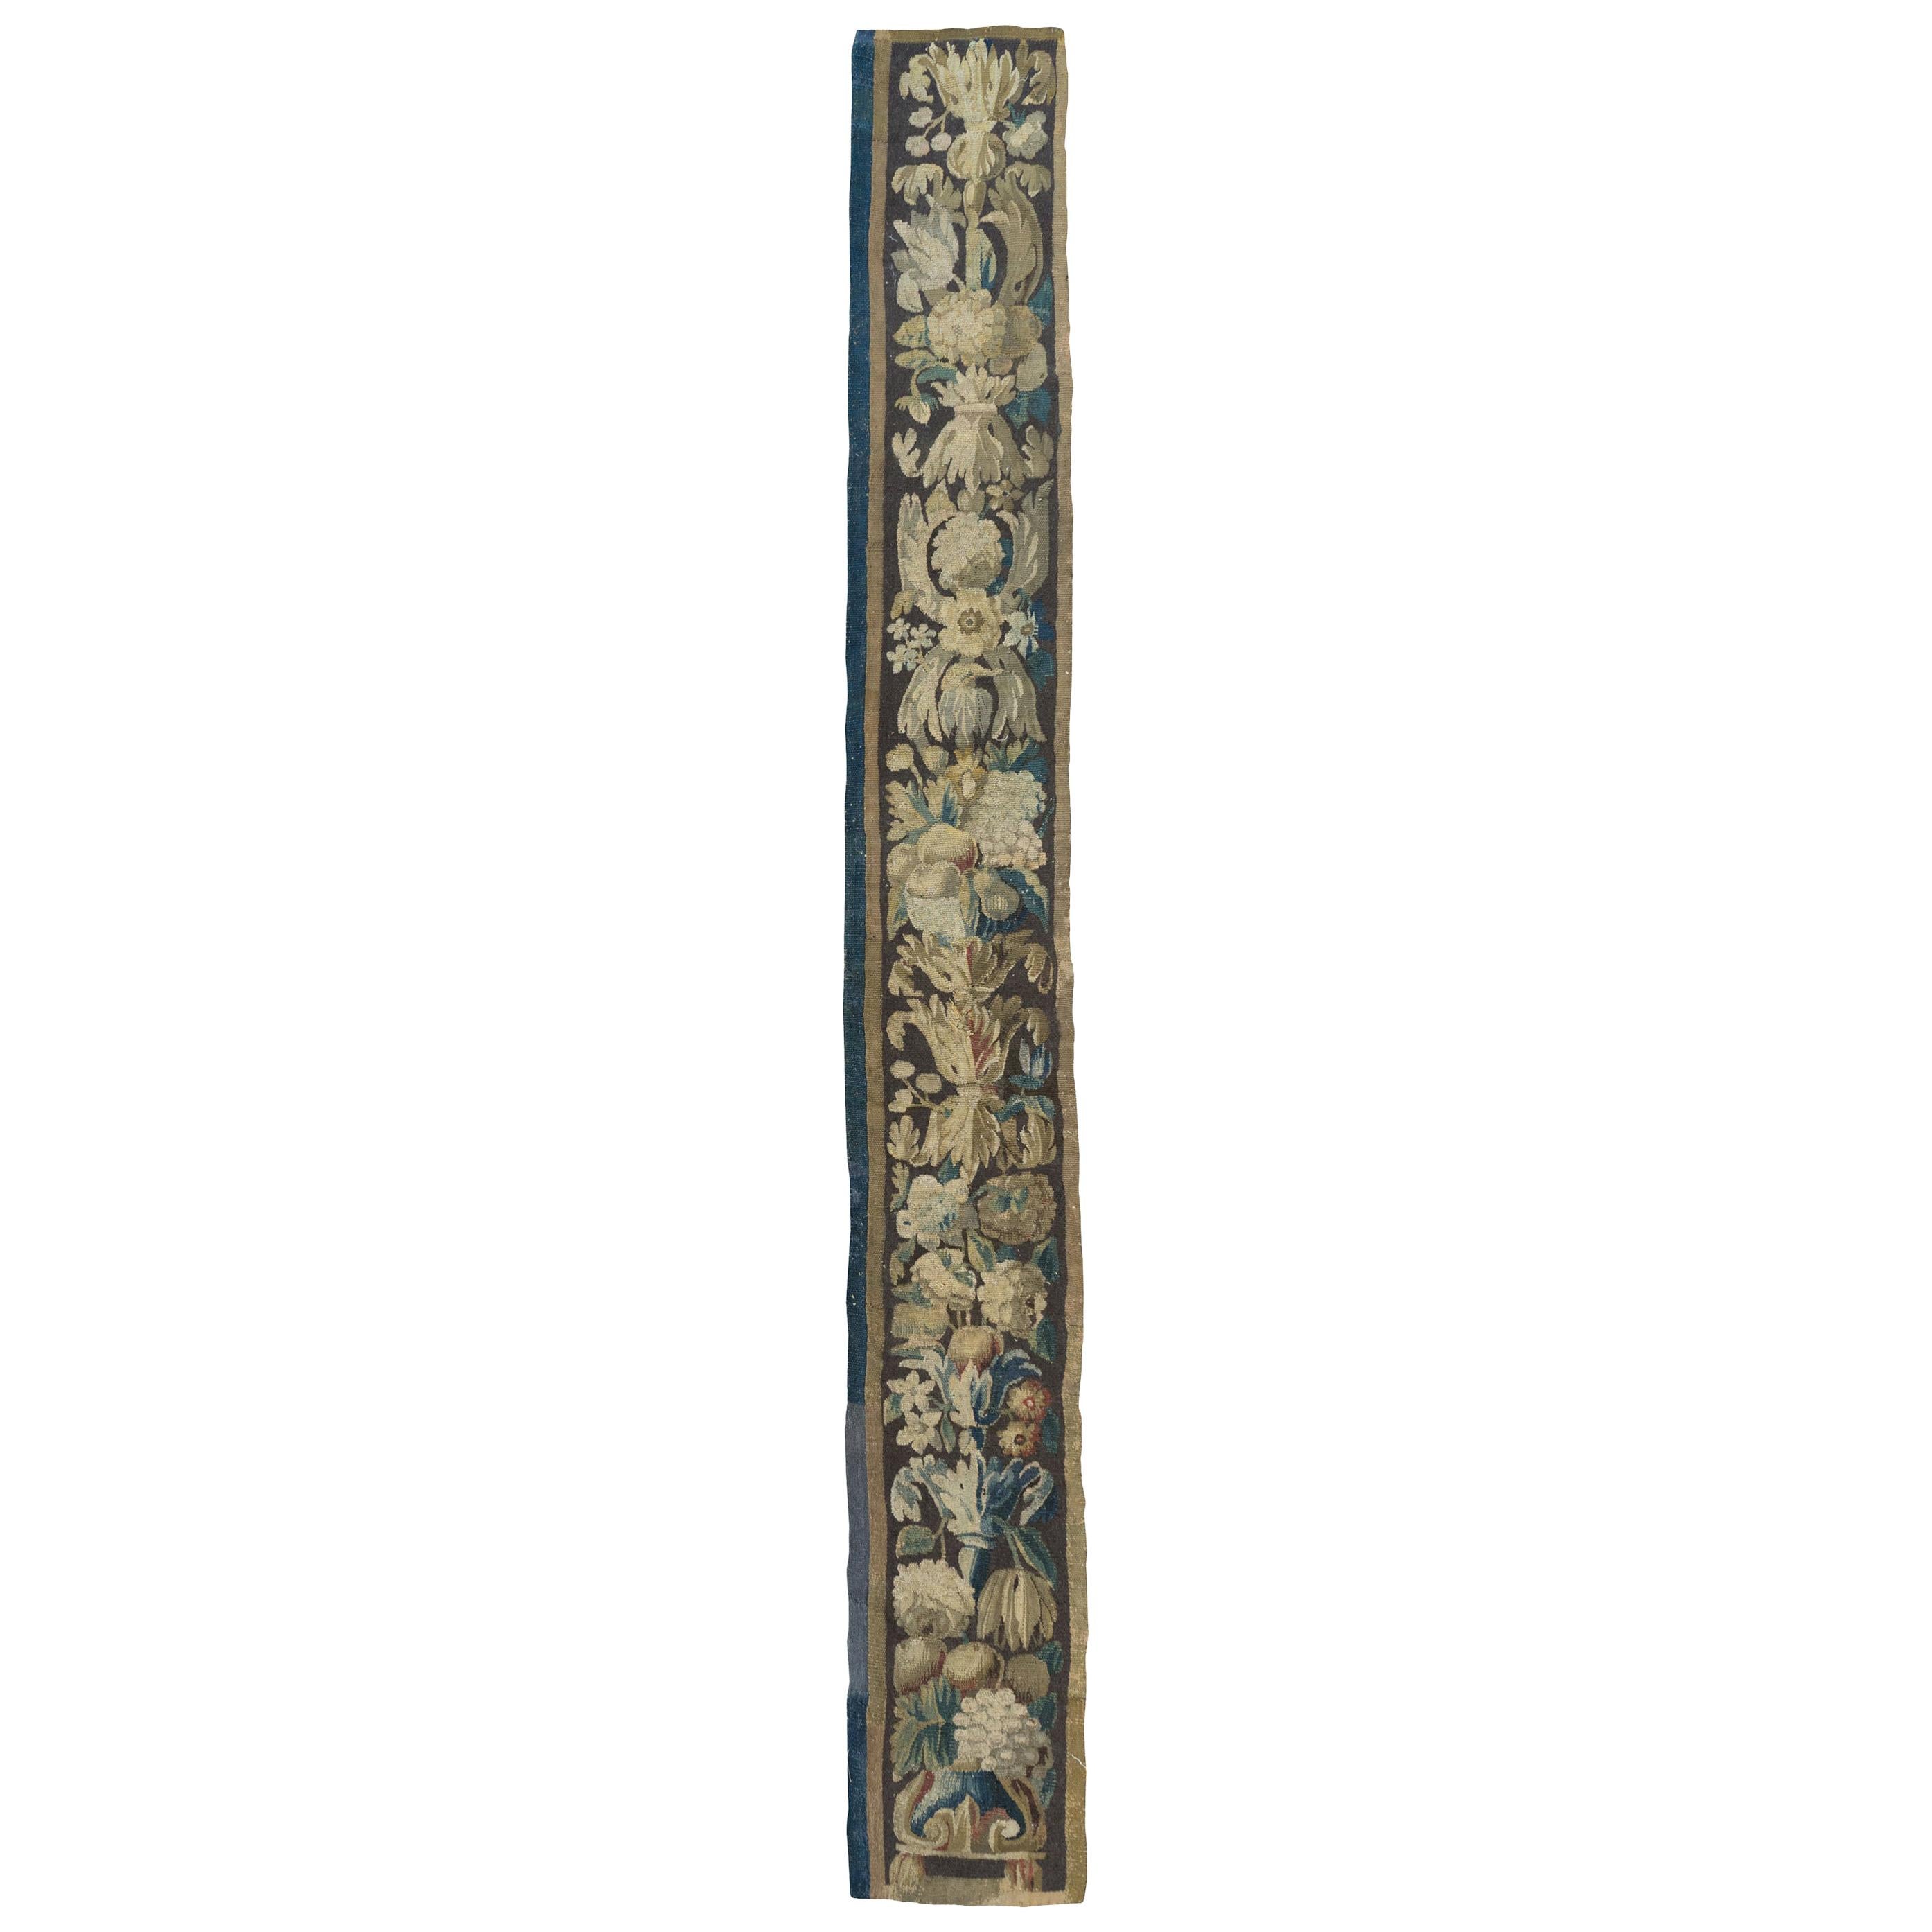 Ancien panneau de bordure de tapisserie d'Aubusson français du 17ème siècle, ivoire, bleu et marron